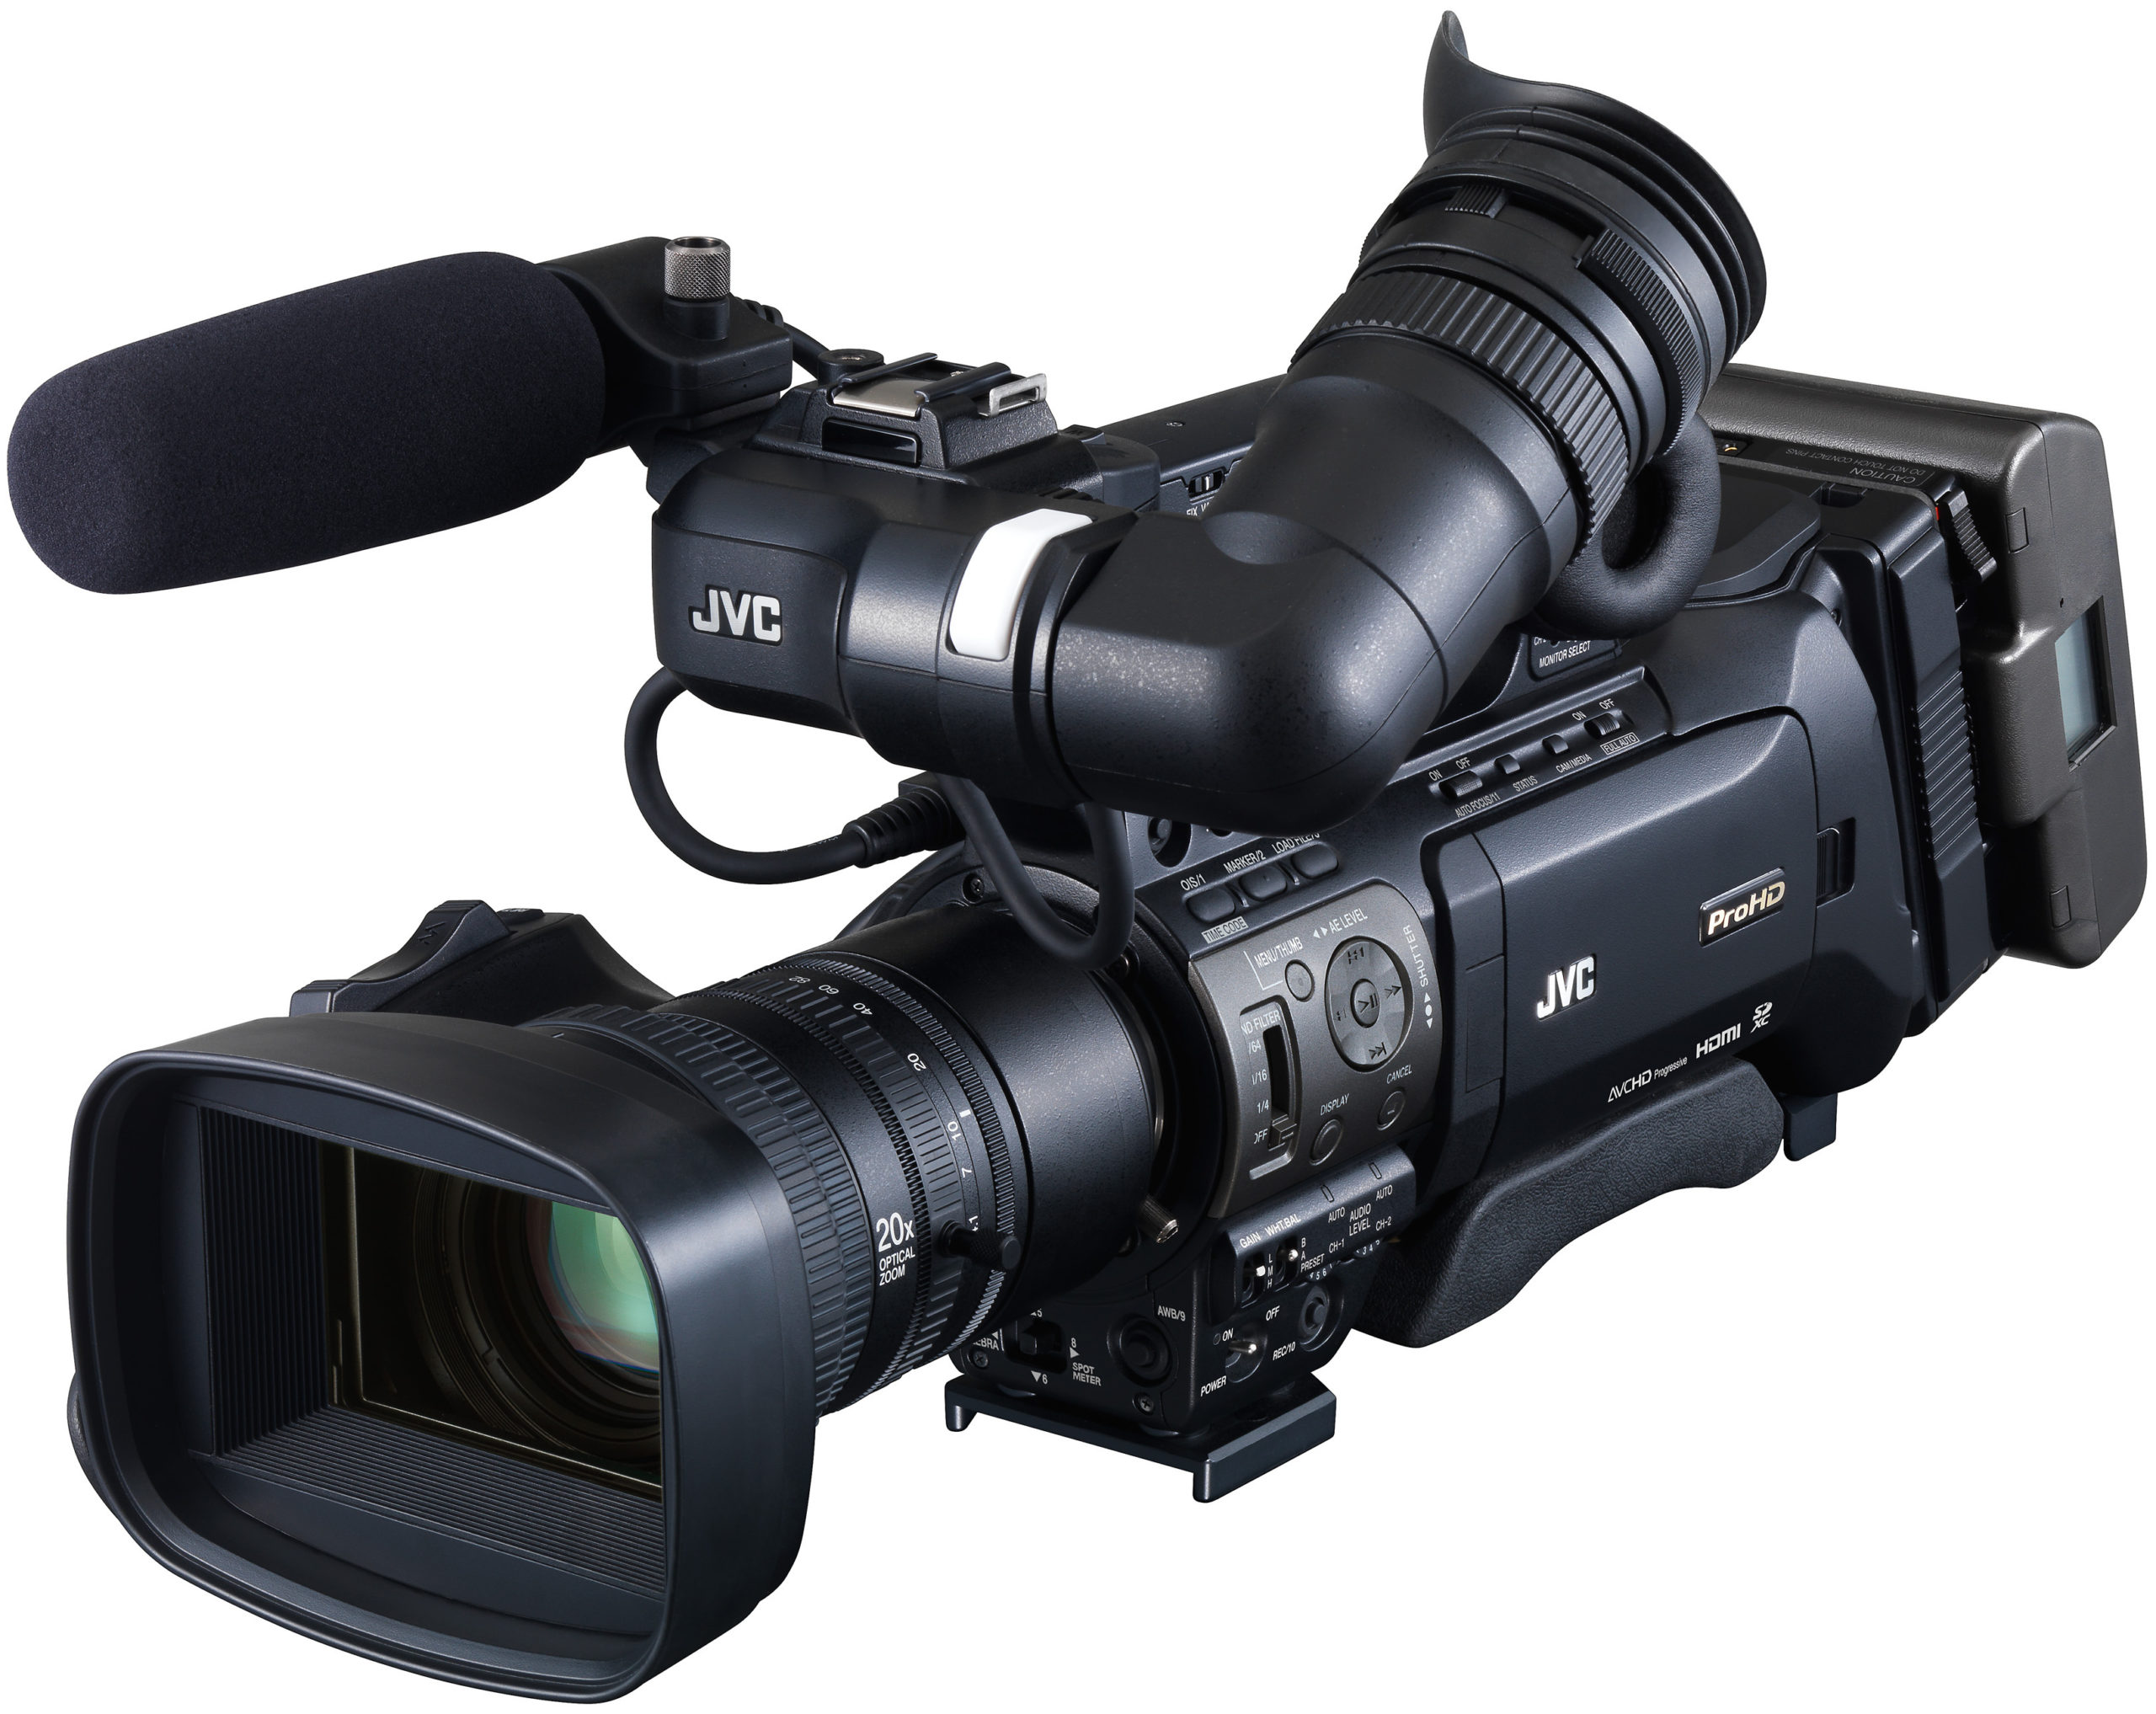 Canon ремонт видеокамер недорого. JVC GY-hm850re. Видеокамера "JVC" GY-hm750e. Видеокамера JVC GY-hm150e. JVC GY-hm180e.